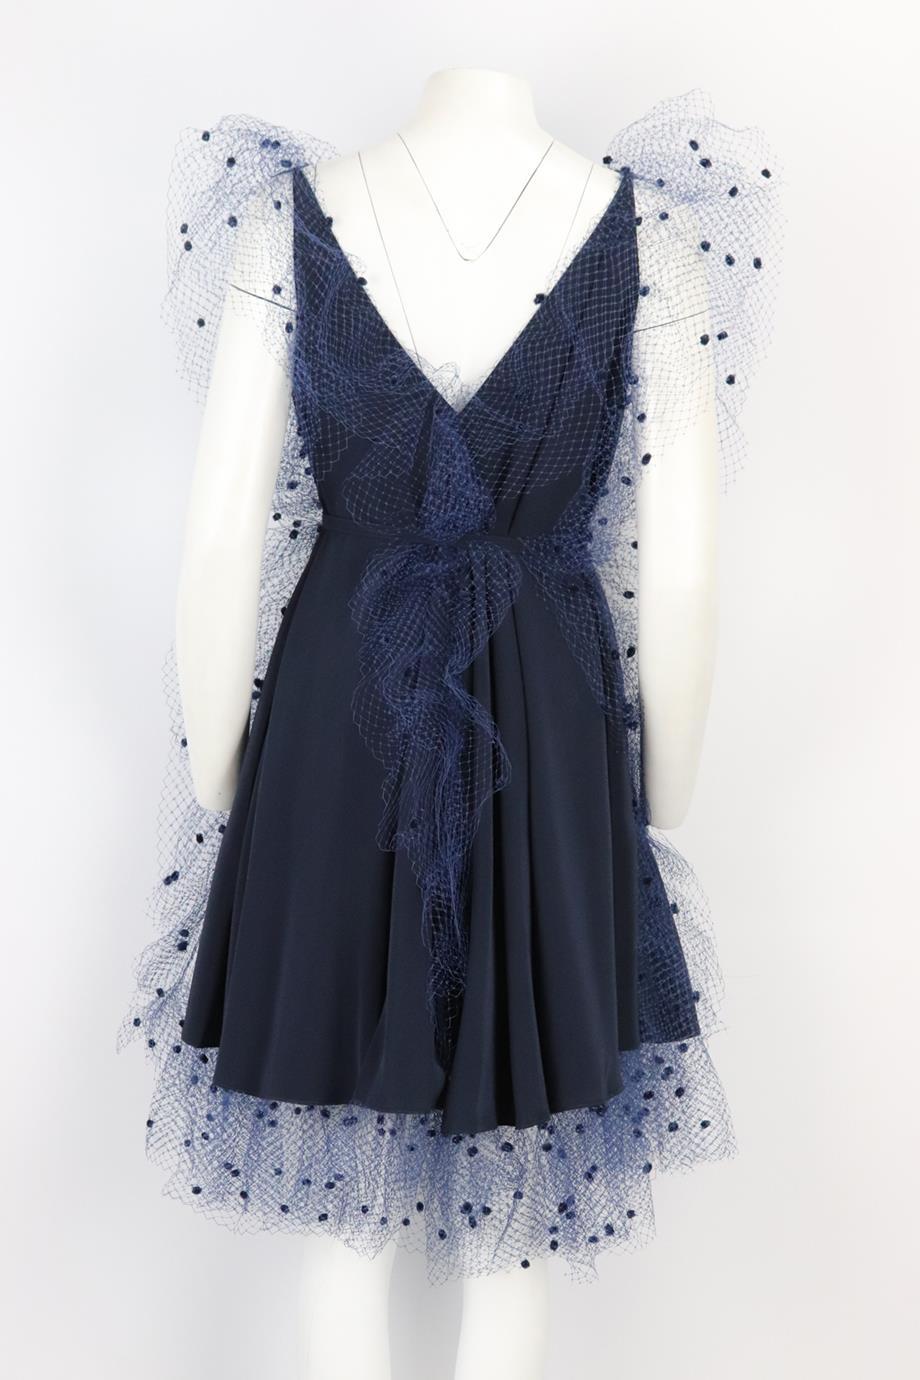 Women's Alexis Mabille Embellished Belted Voile Trimmed Crepe Mini Dress Fr 36 Uk 8